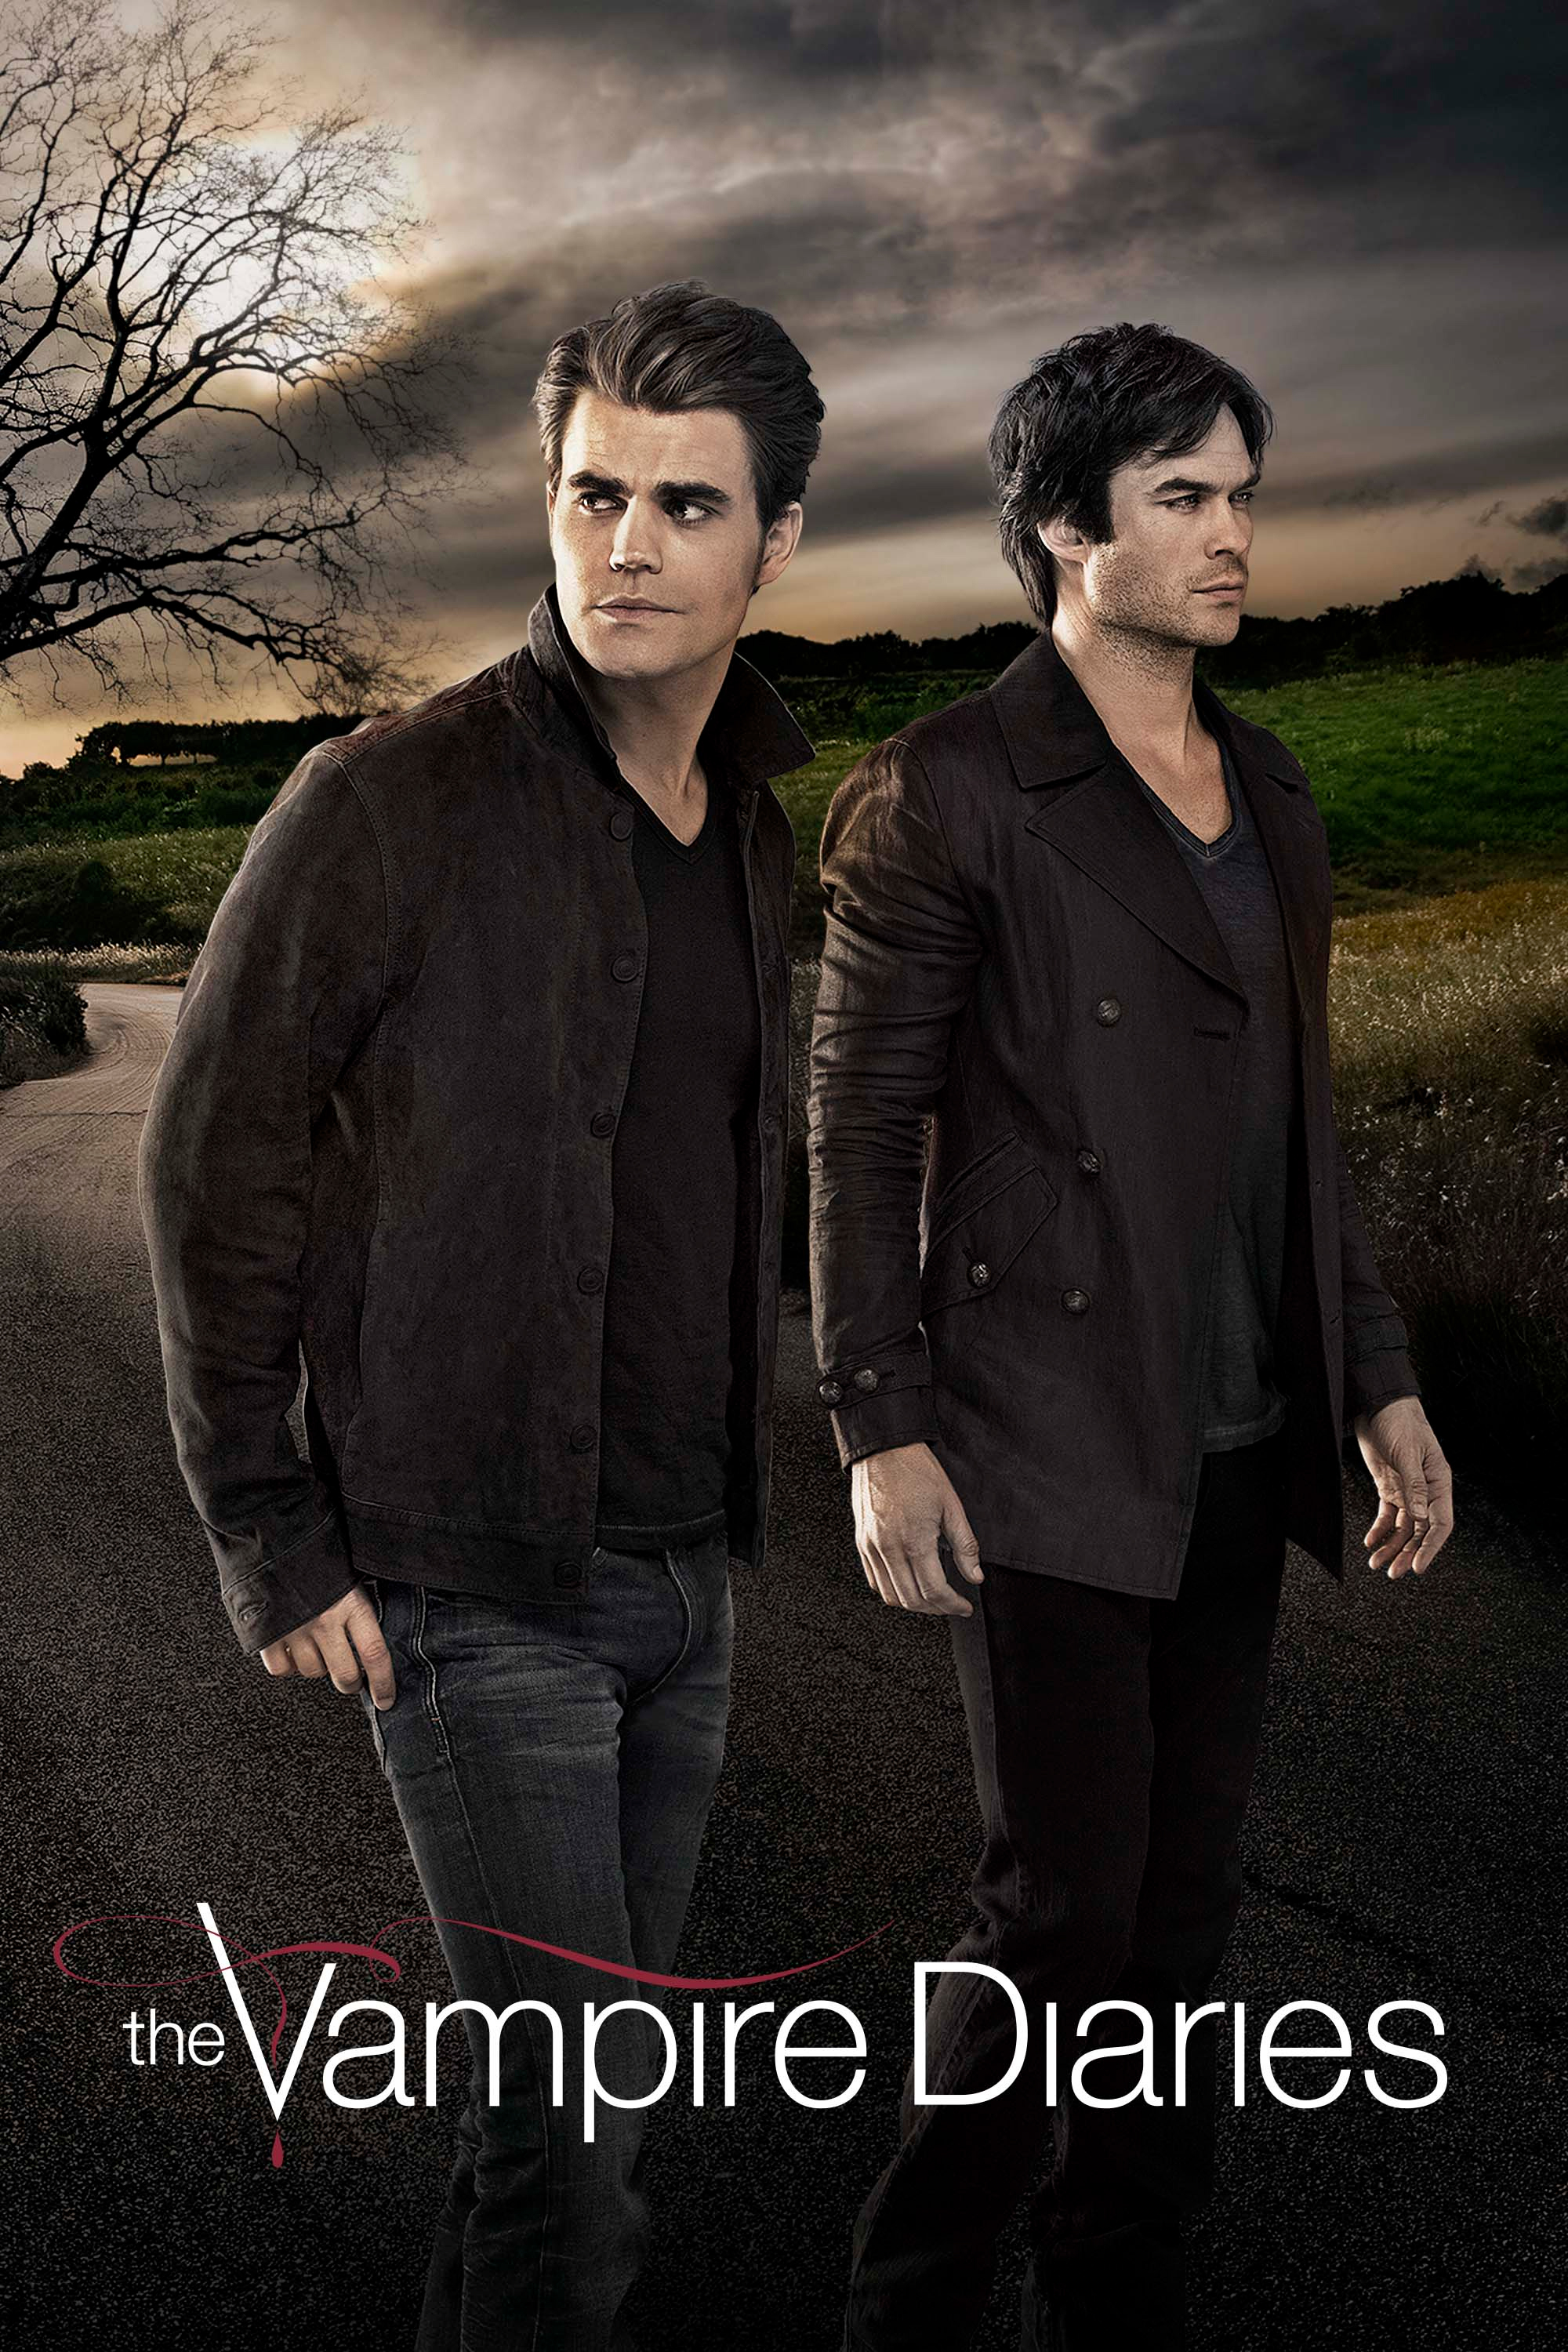 دانلود زیرنویس فارسی سریال The Vampire Diaries | دانلود زیرنویس سریال The Vampire Diaries | زیرنویس فارسی سریال The Vampire Diaries |